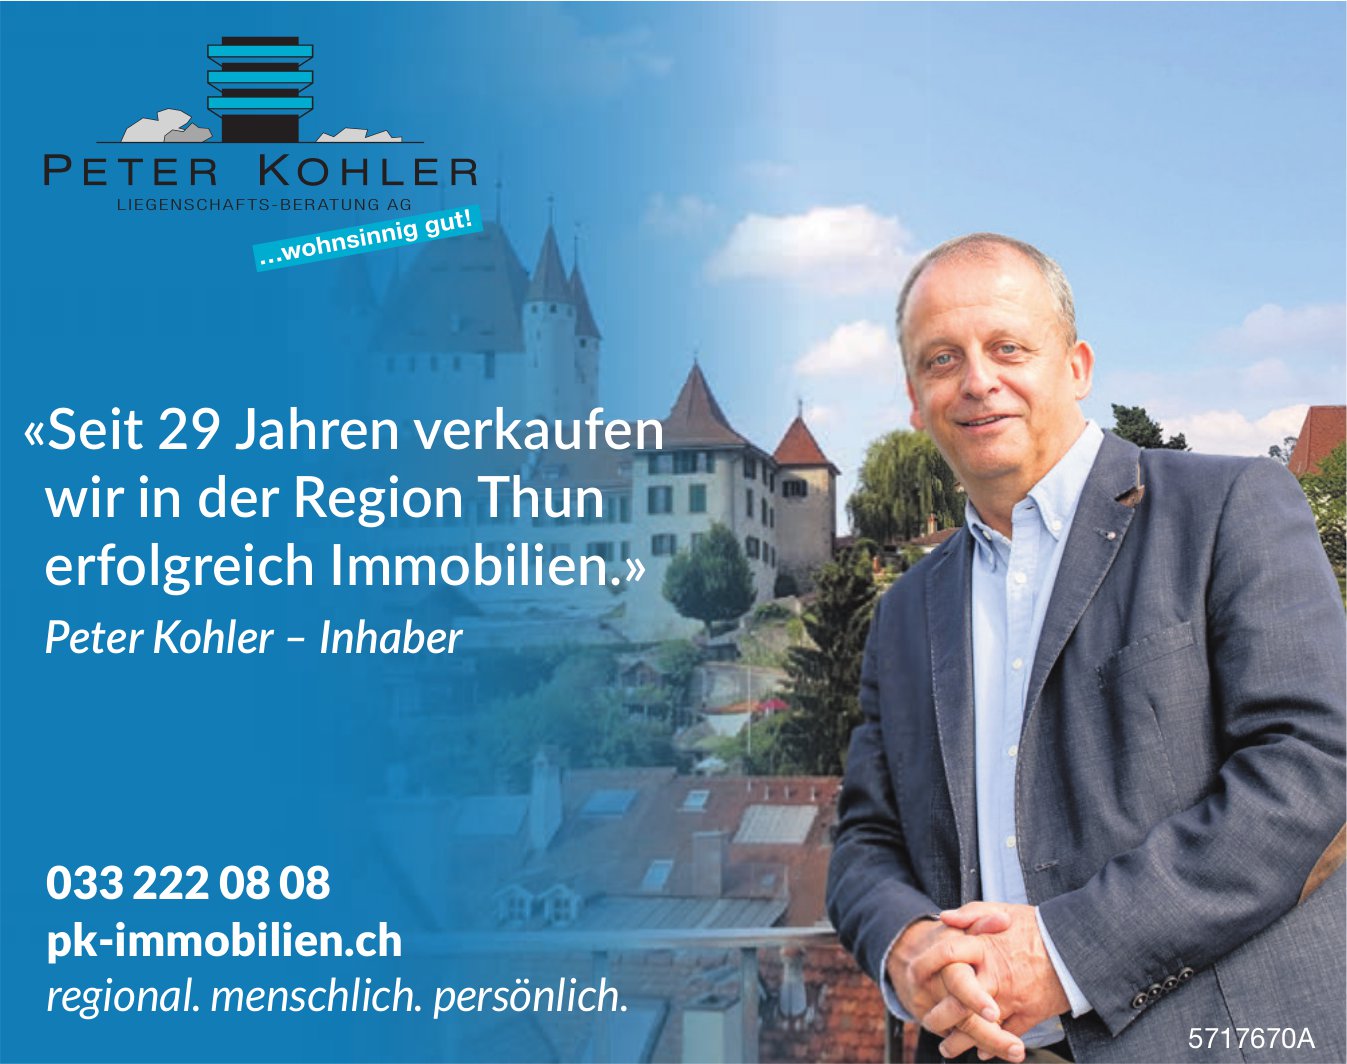 Peter Kohler Liegenschafts-Beratung AG - Seit 29 Jahren verkaufen wir in der Region Thun erfolgreich Immobilien